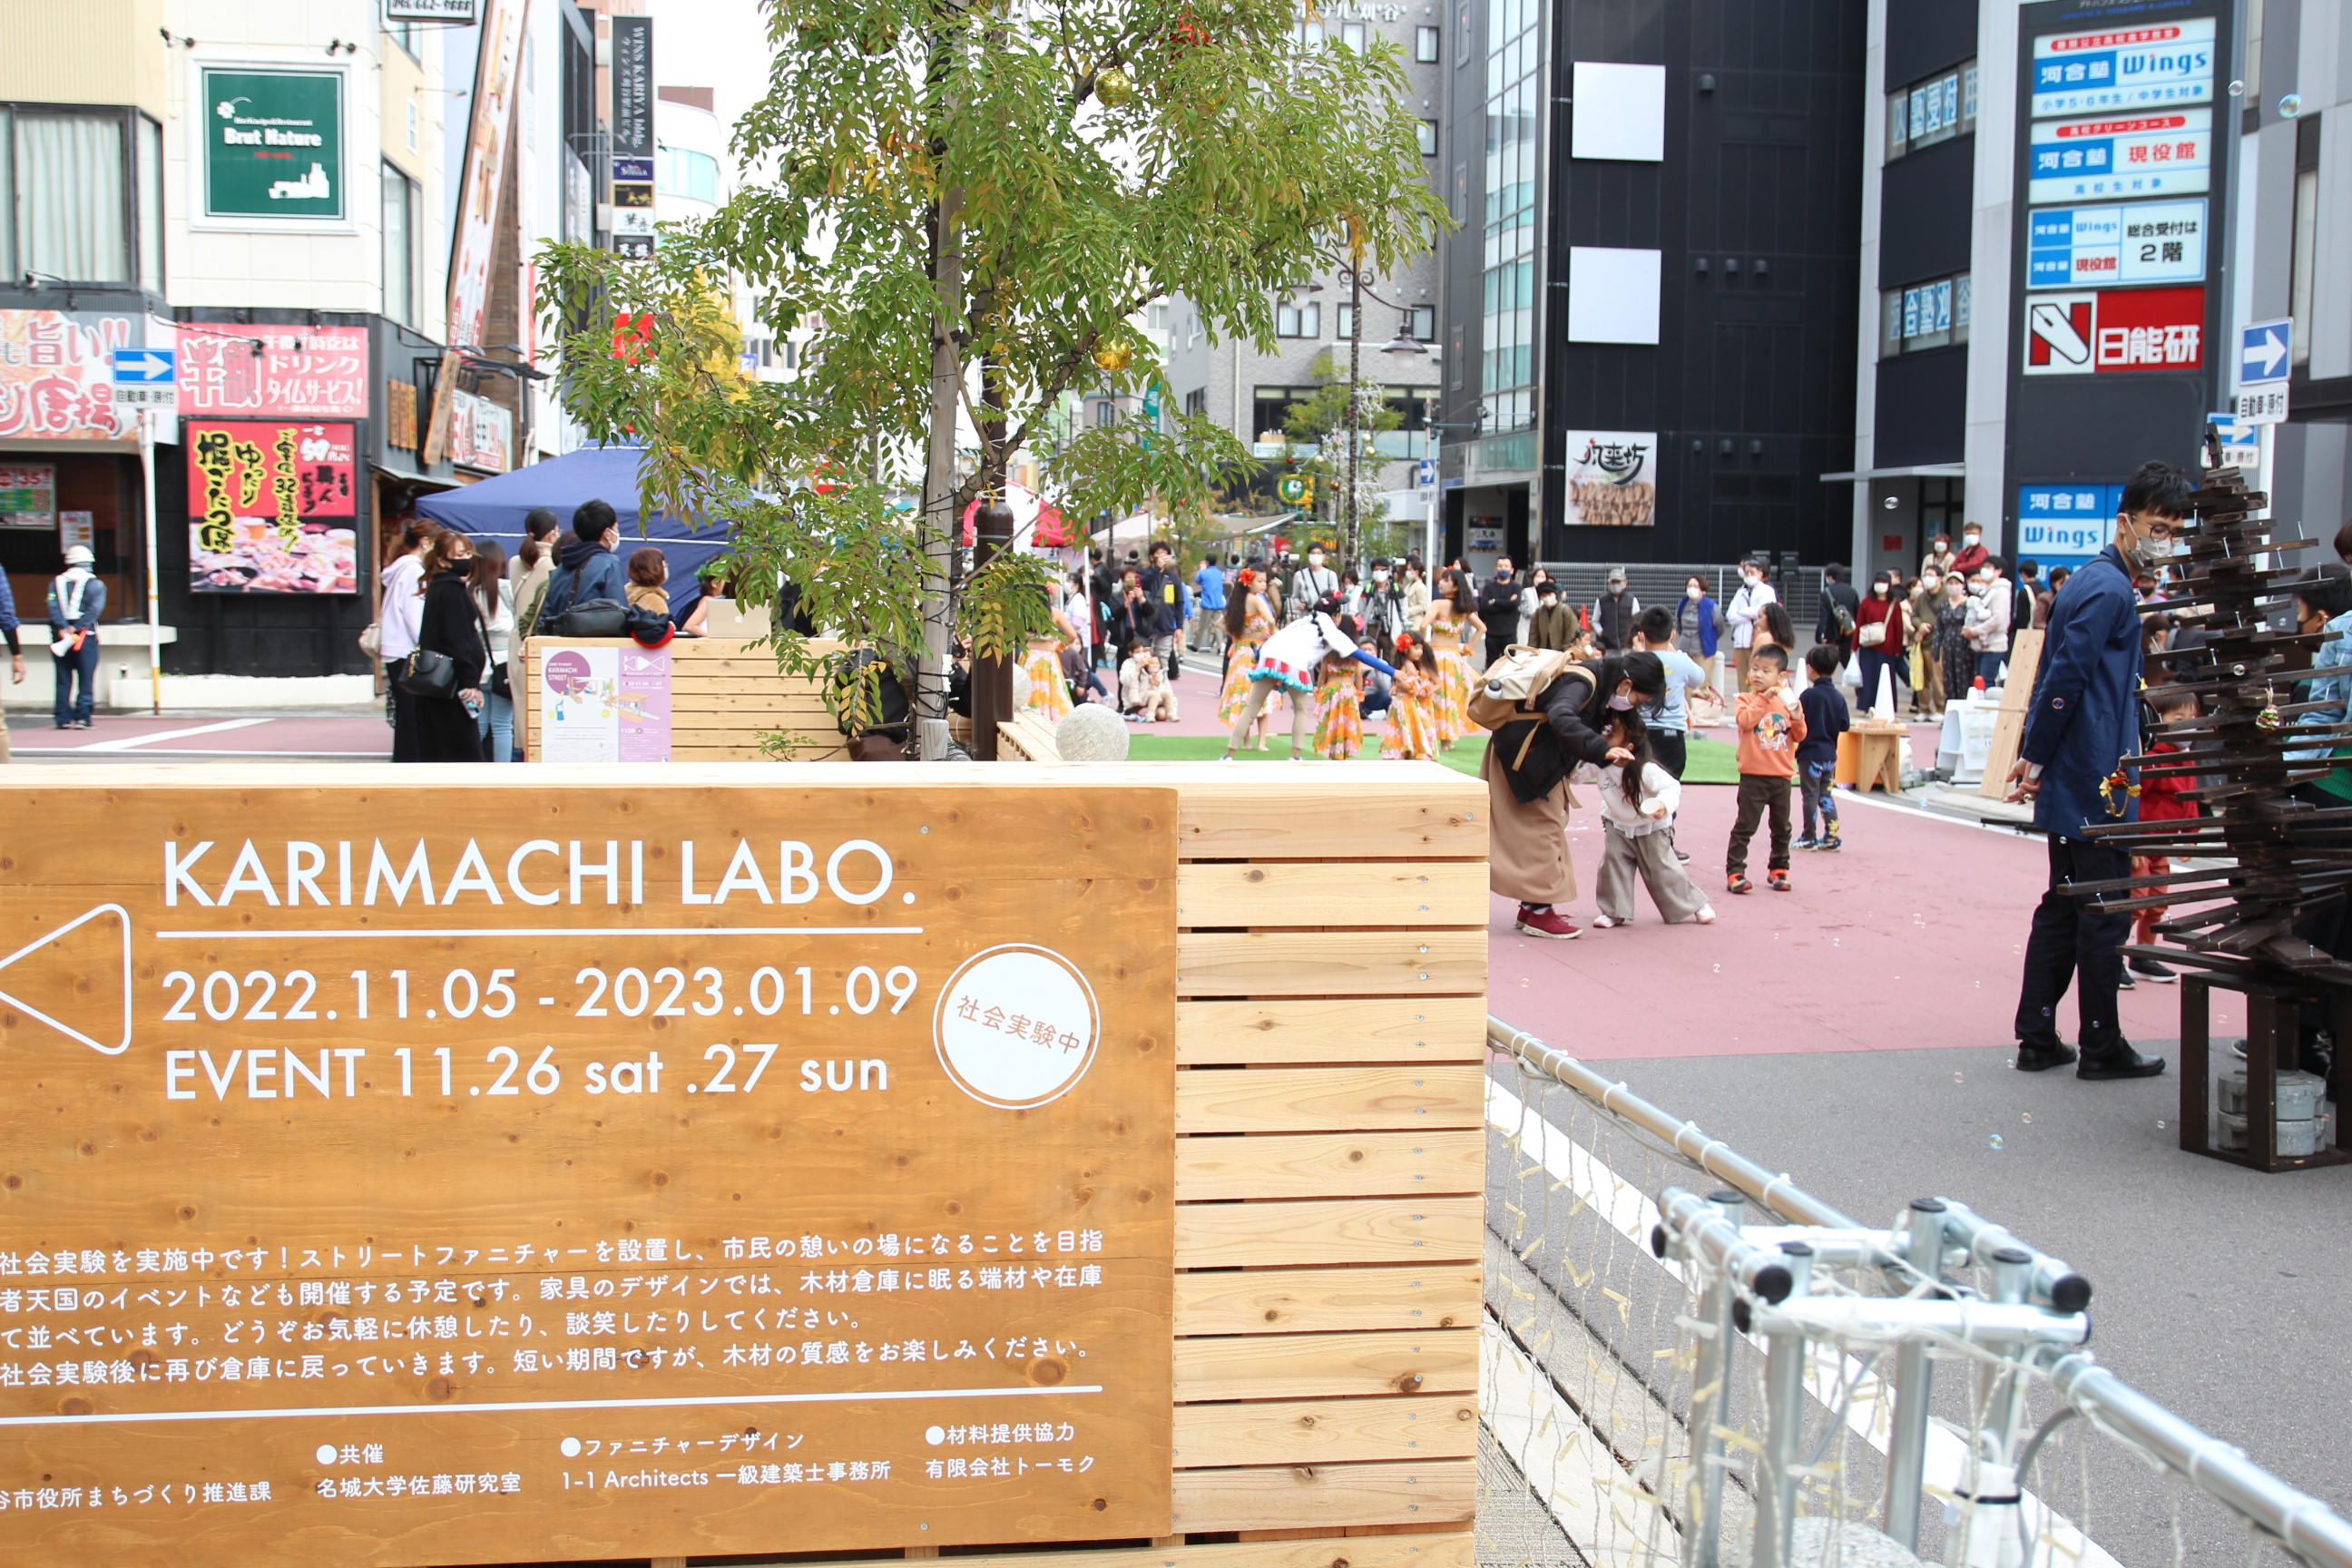 建築学科の佐藤研究室が刈谷駅北口で賑わい創出の社会実験を兼ねたイベントを実施